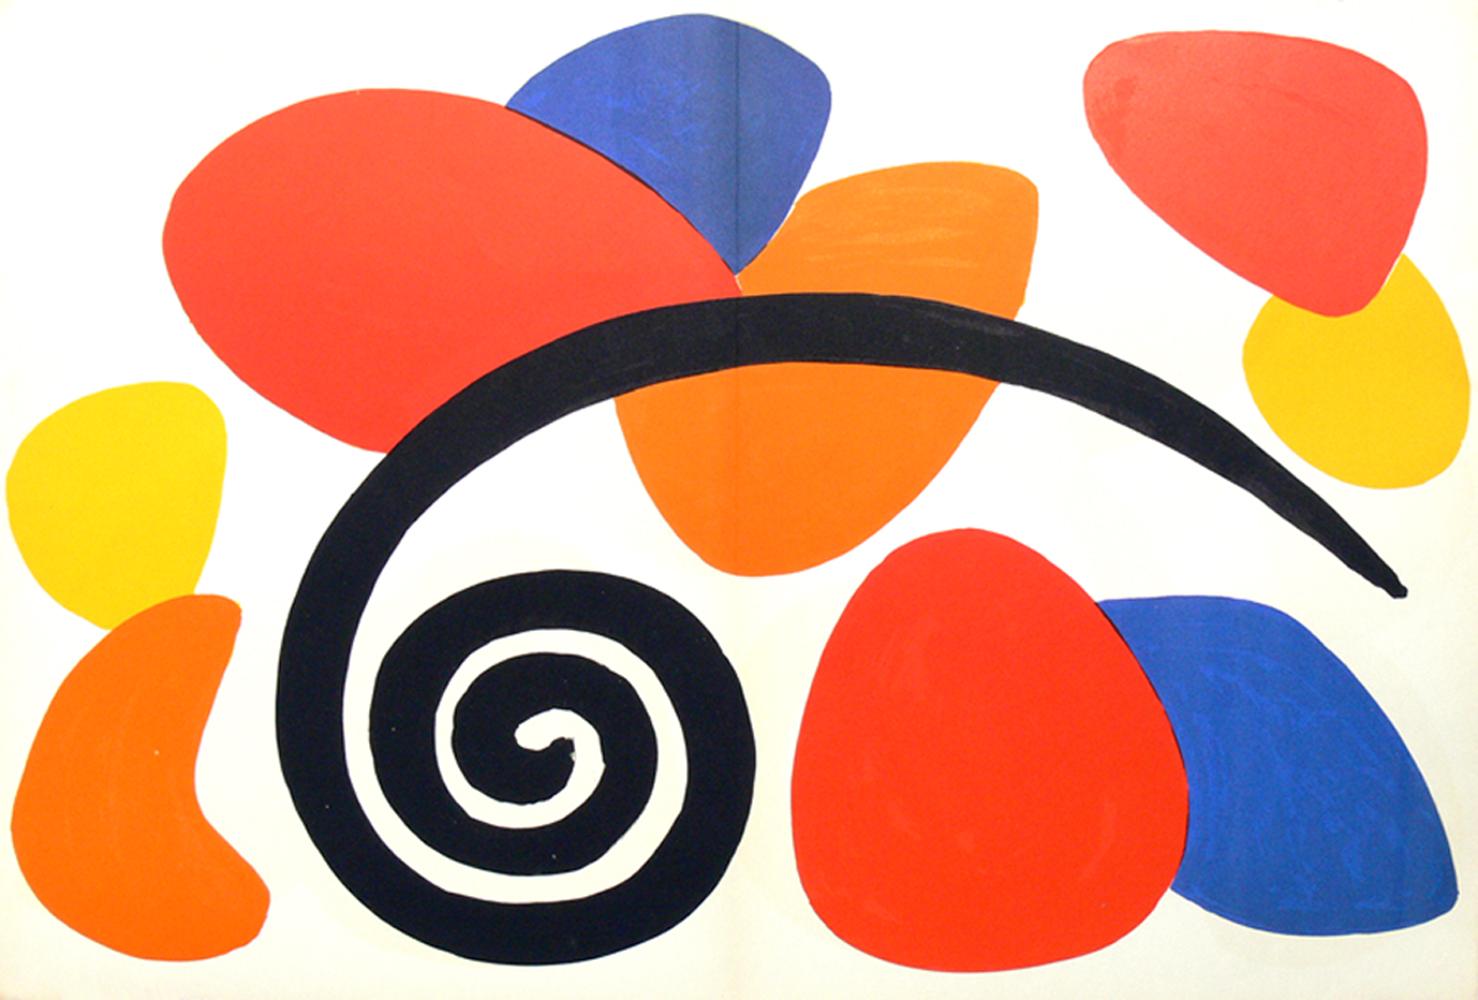 Auswahl von Farblithografien von Alexander Calder, Frankreich, ca. 1960er Jahre. Wir haben eine Gruppe dieser Farblithografien aus dem Nachlass eines Ehepaars erworben, das von 1951-1983 in Frankreich lebte. Sie stammen höchstwahrscheinlich aus der